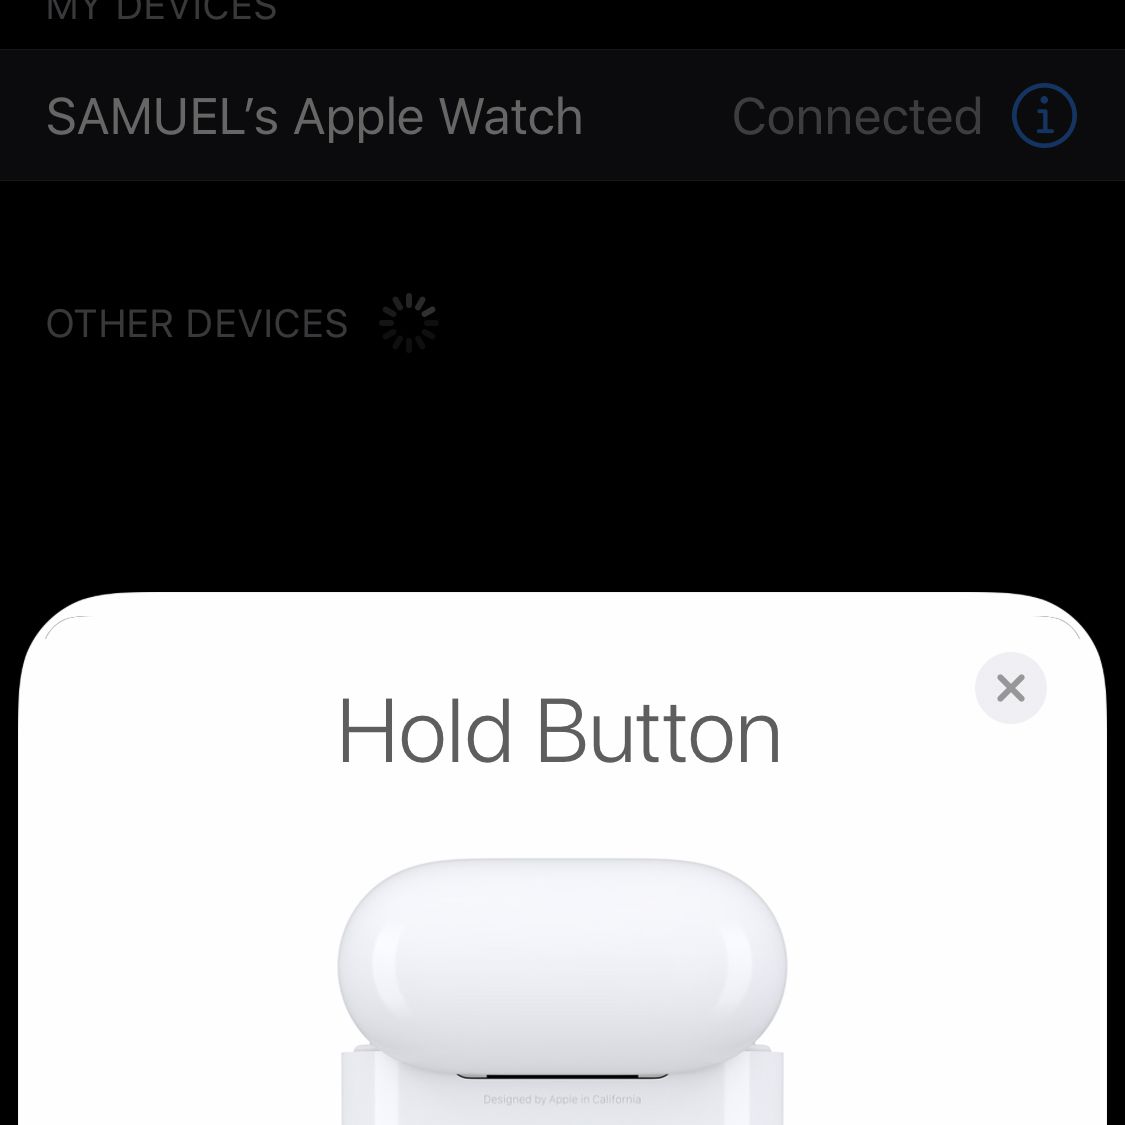 Captura de tela de ser solicitado a segurar o botão AirPods para configuração